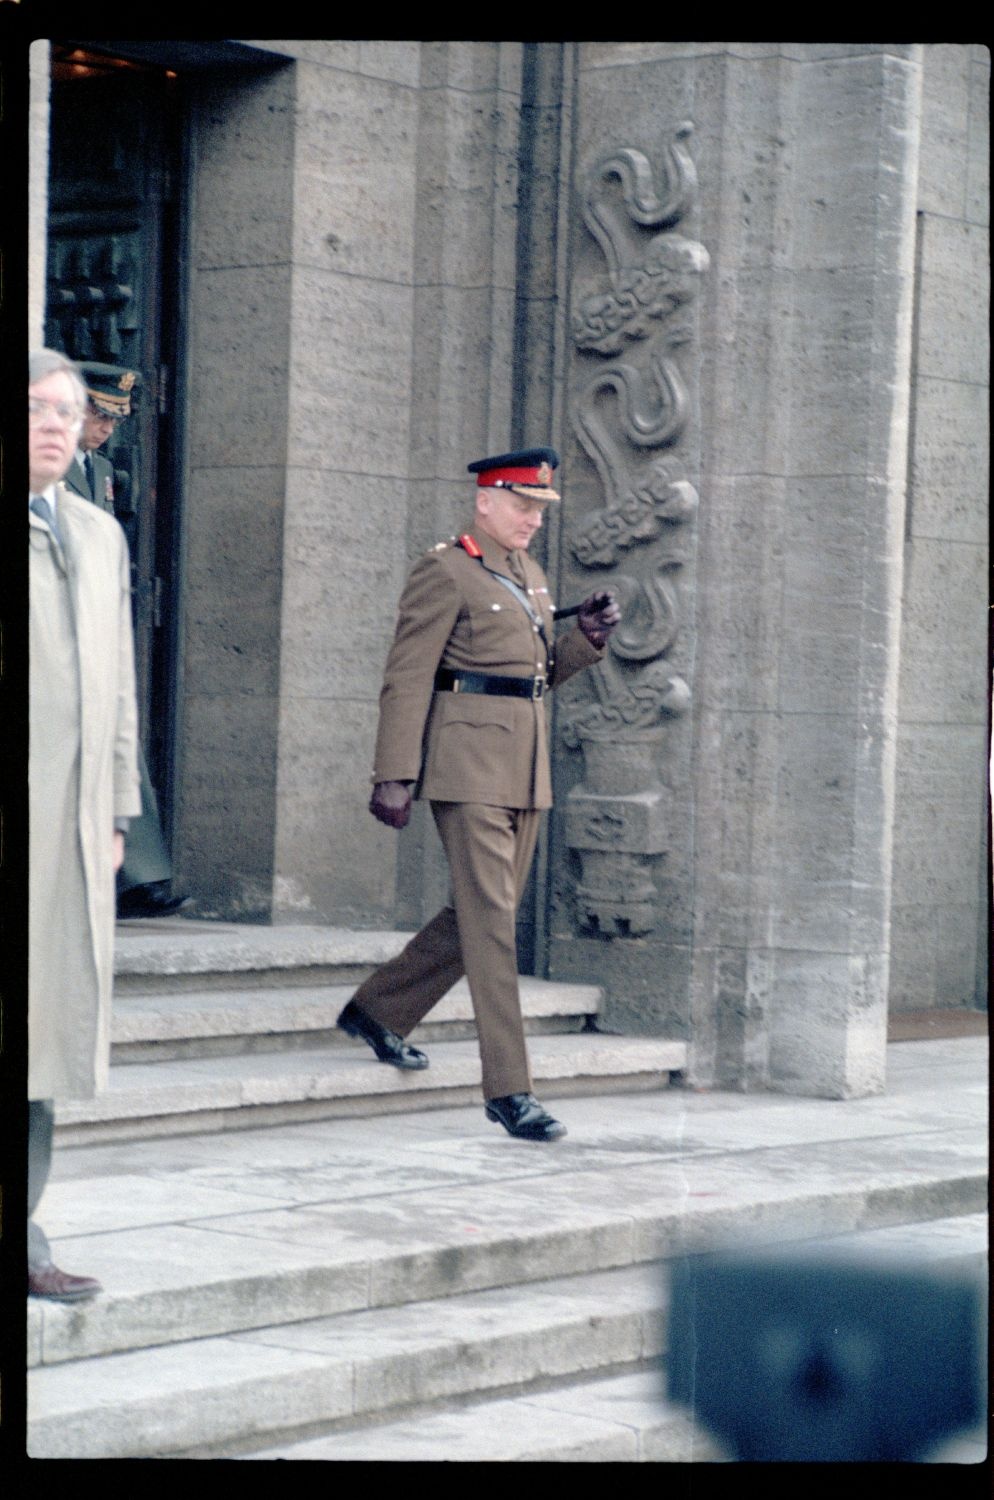 Fotografie: Verabschiedung von Major General Bernard Gordon Lennox, britischer Stadtkommandant, in der Alliierten Kommandantur in Berlin-Dahlem (AlliiertenMuseum/U.S. Army Photograph Public Domain Mark)